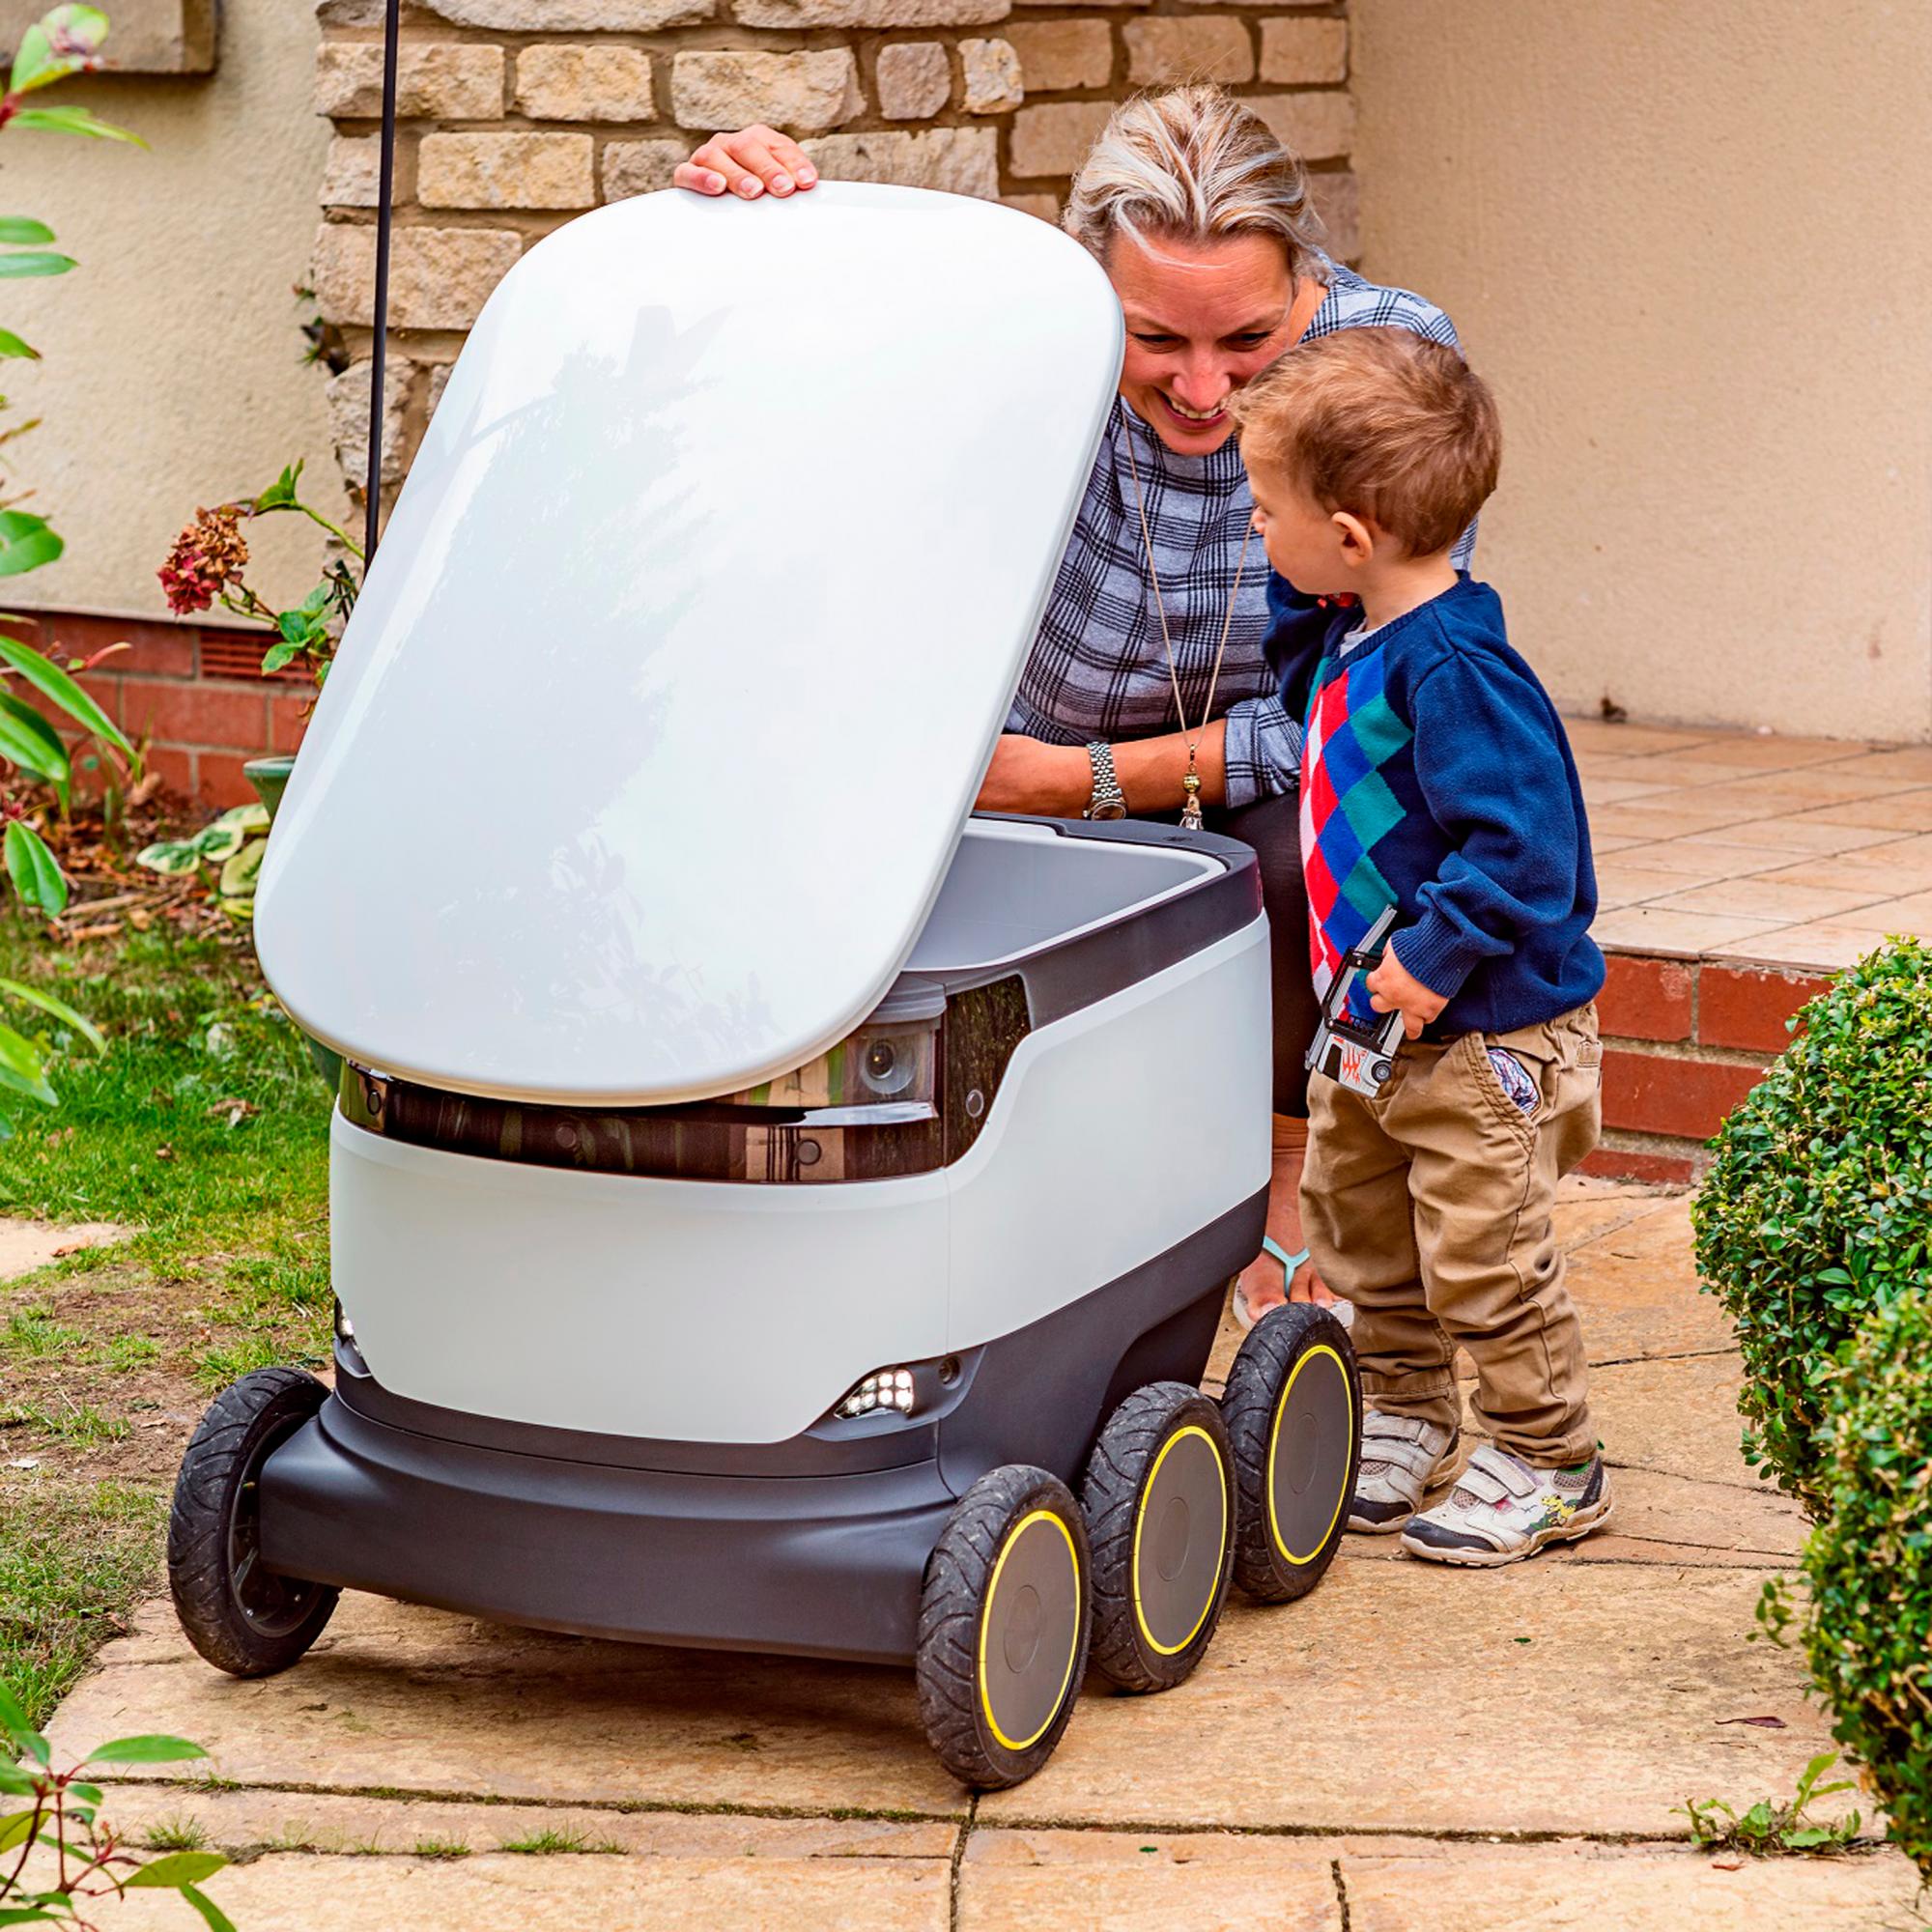 Una madre recoge el pedido de un robot con su hijo al lado.